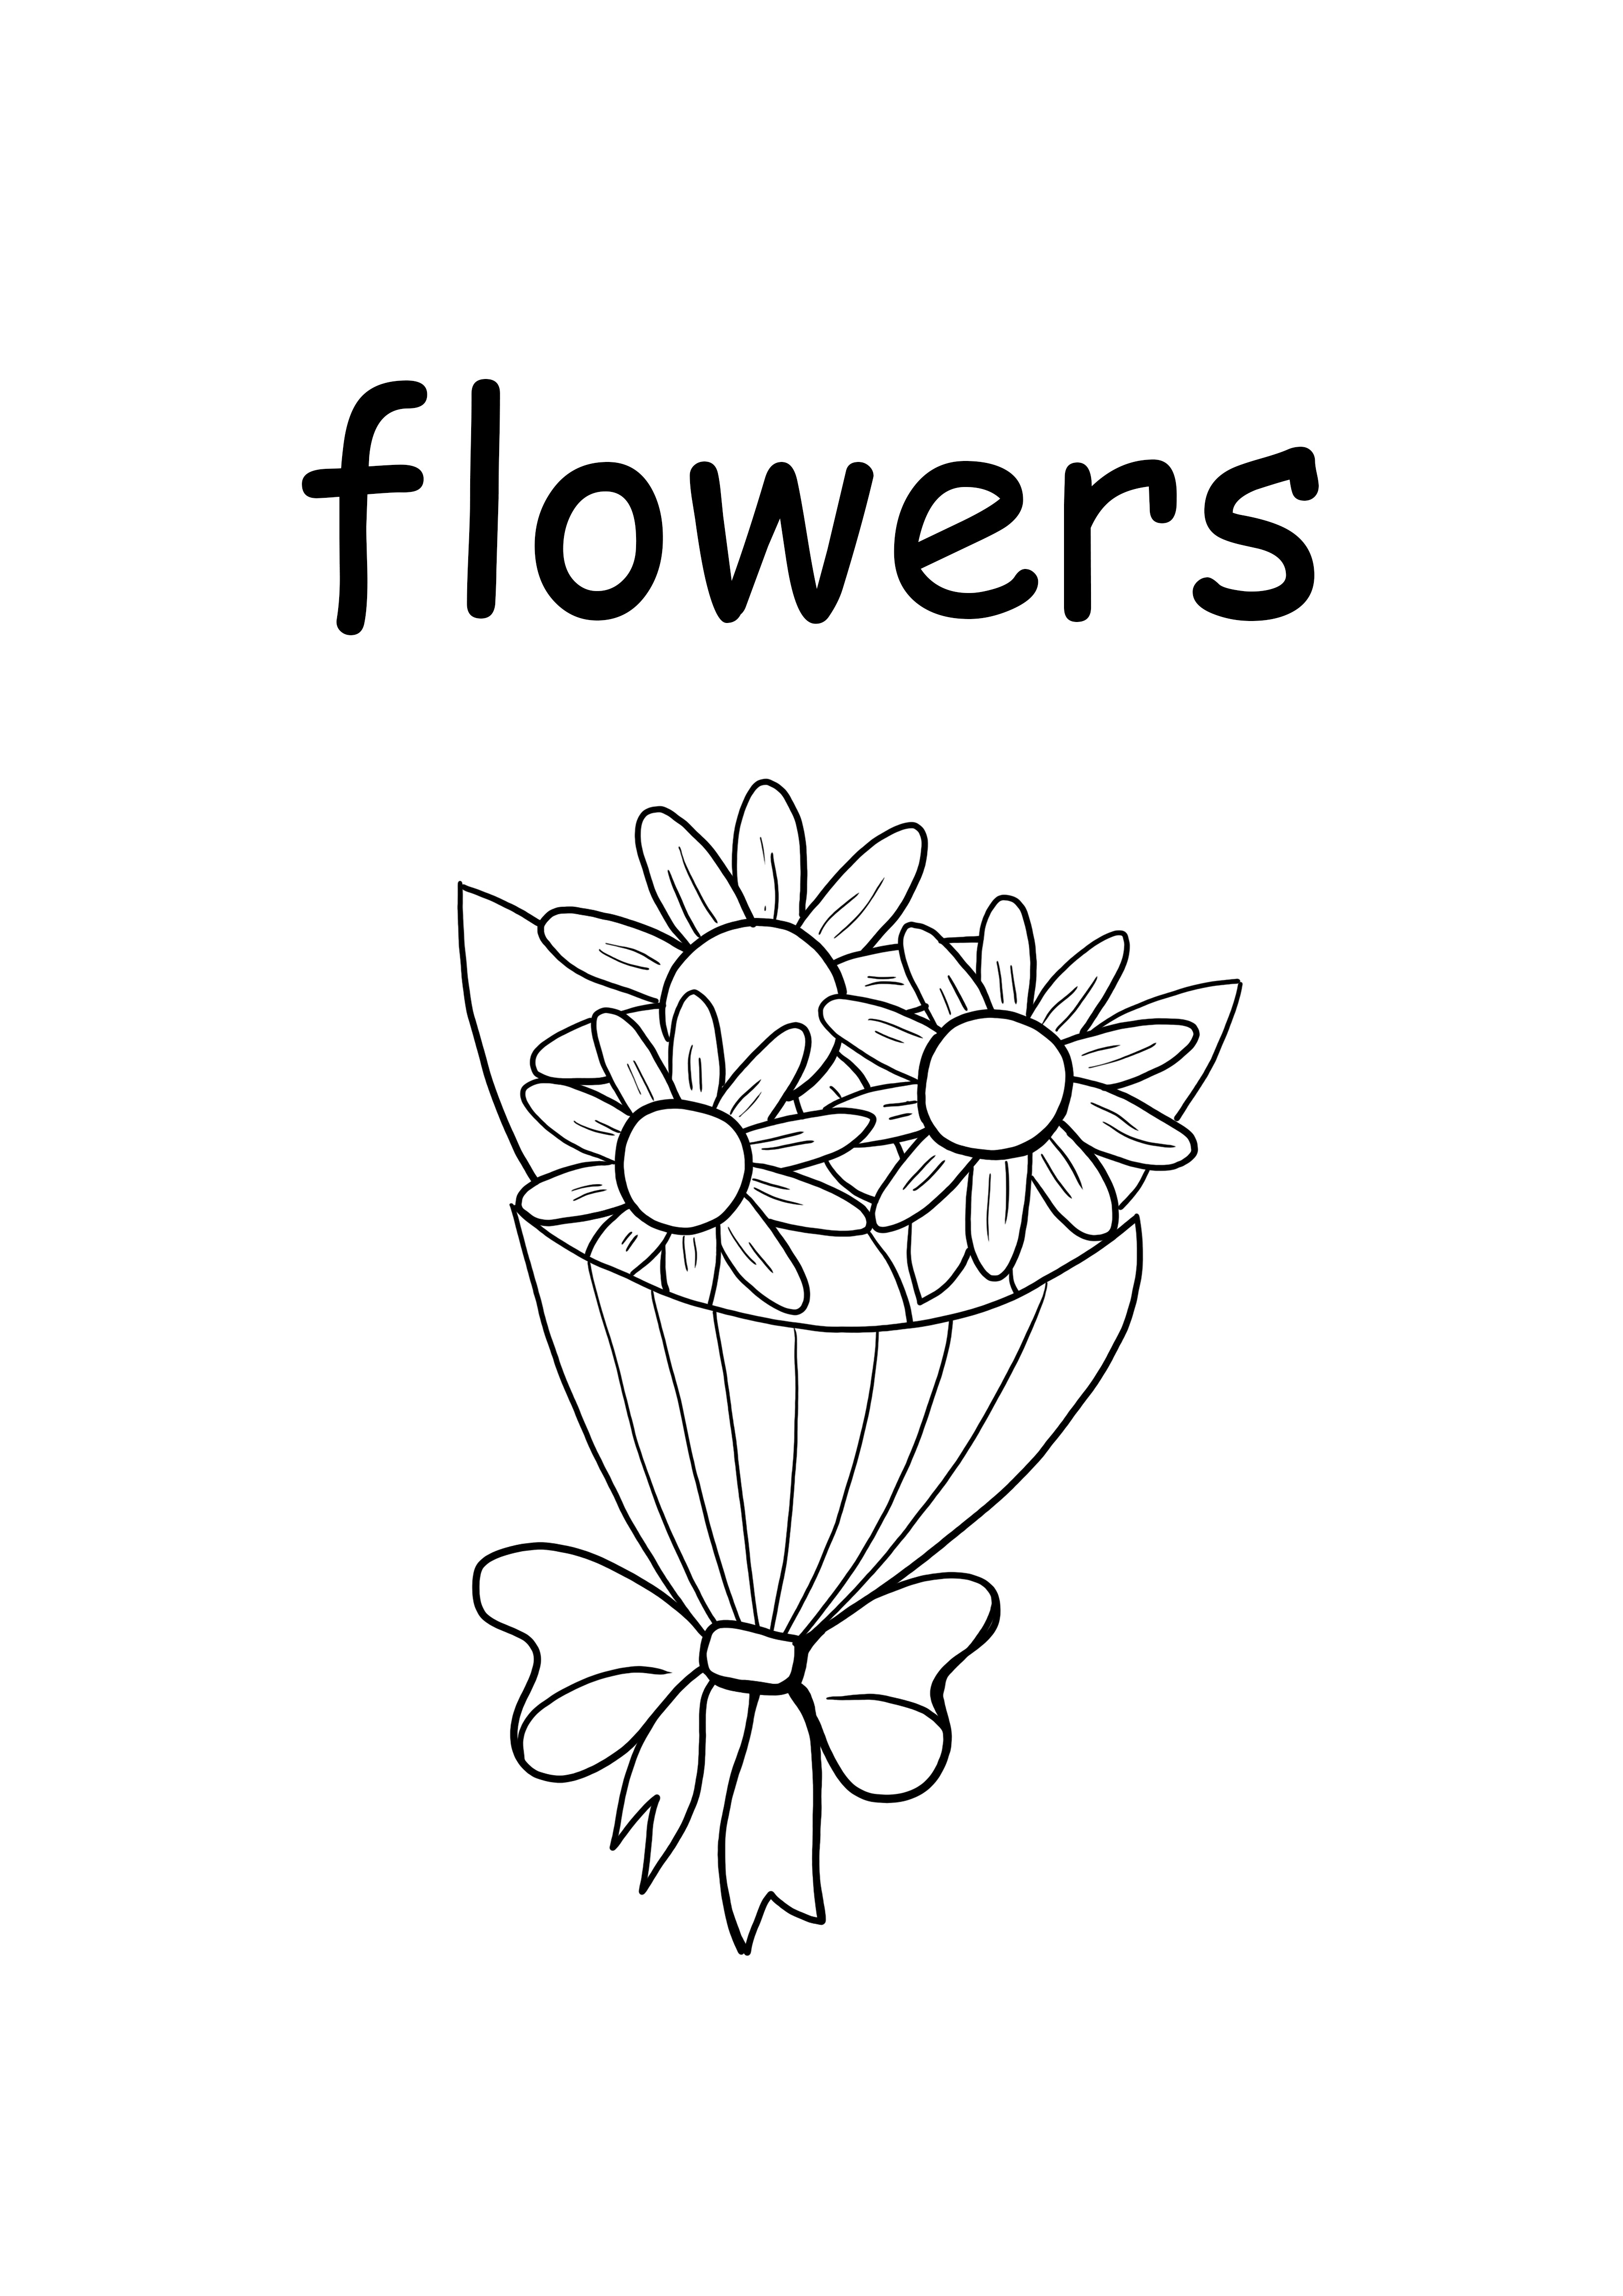 f para flores palabra en minúscula gratis para imprimir y colorear página